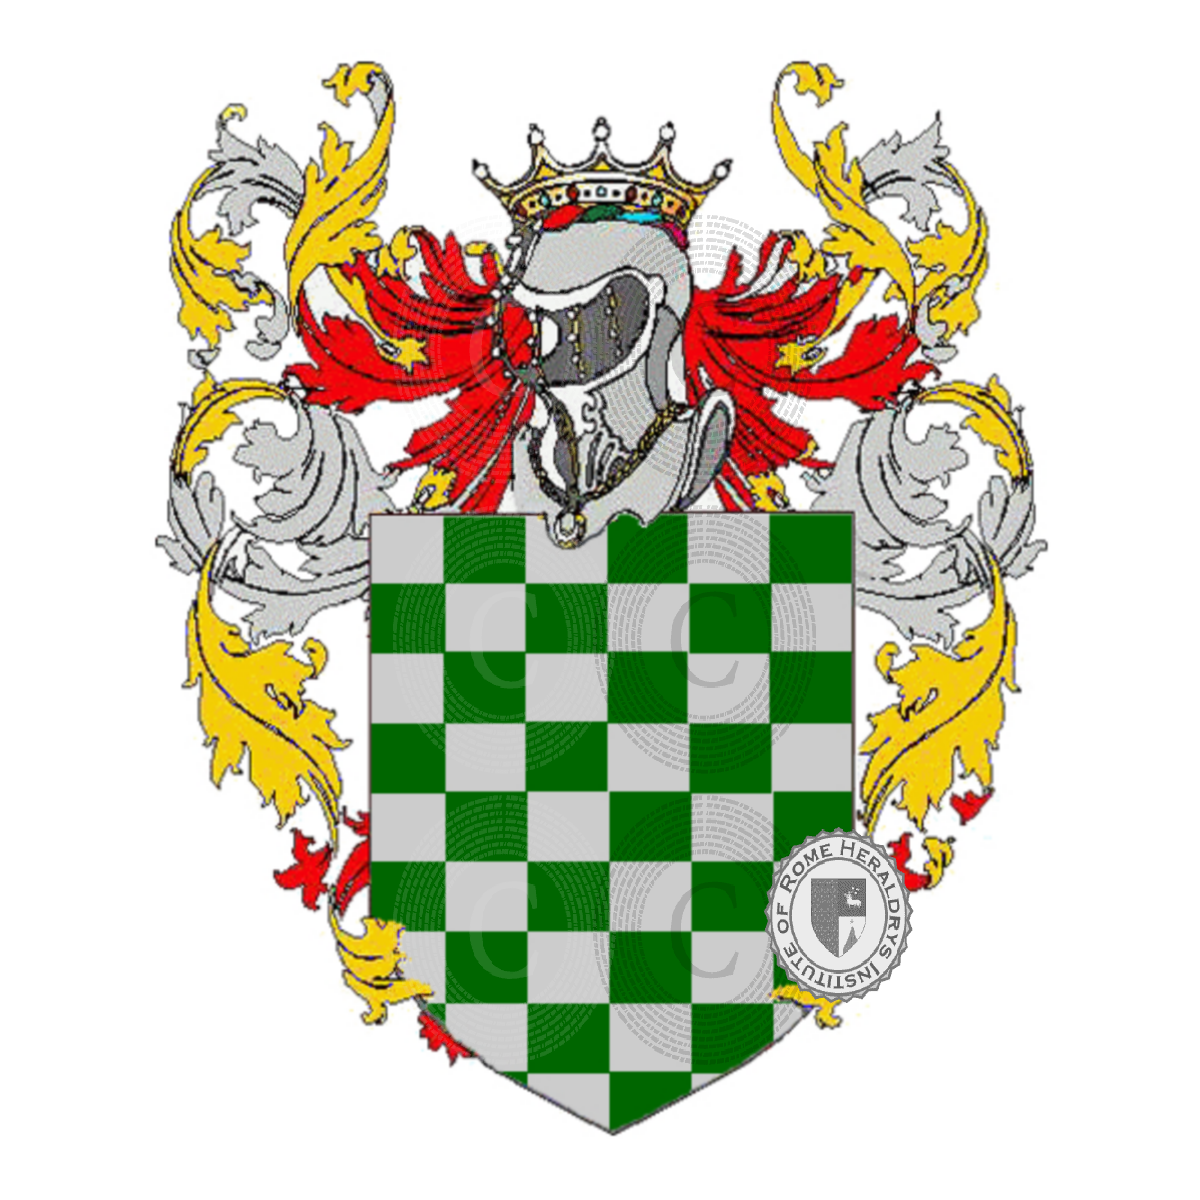 Wappen der Familieragozini